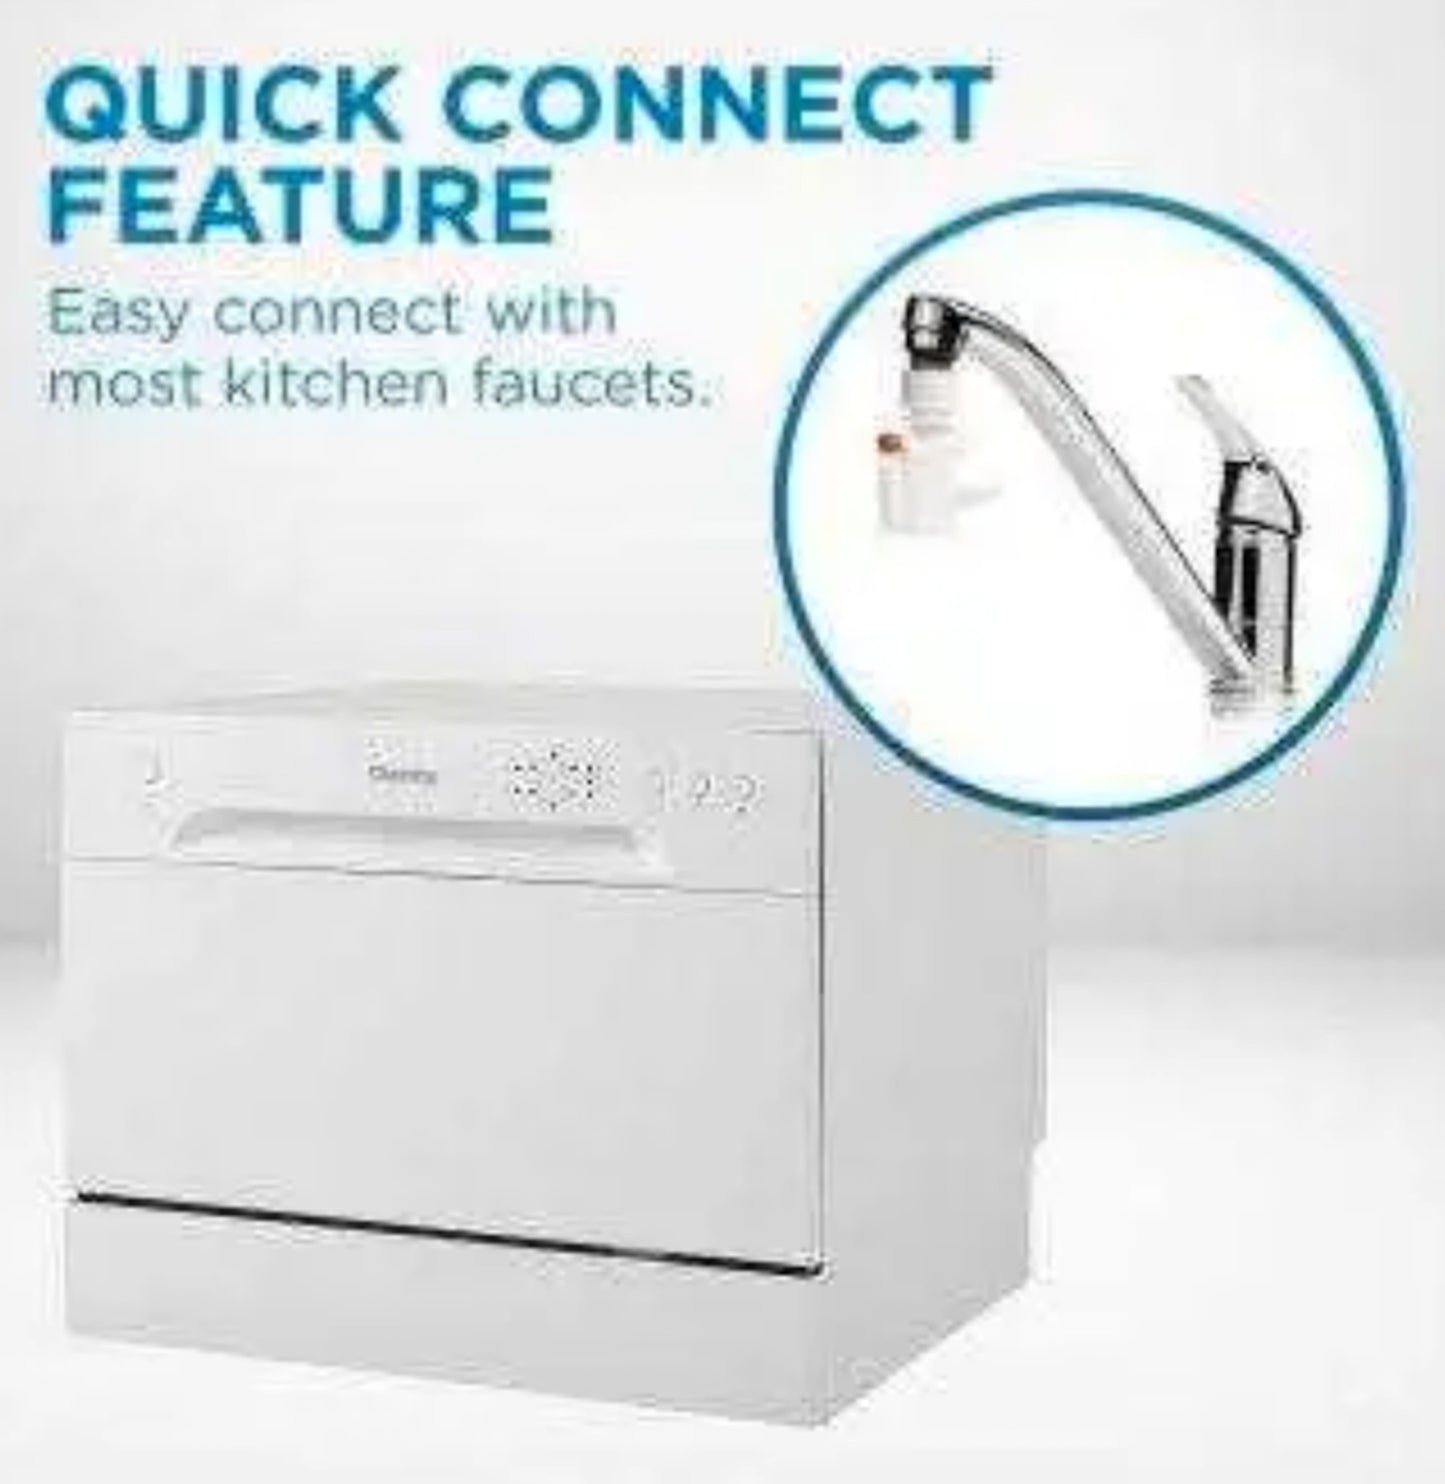 Danby Countertop Portable Dishwasher